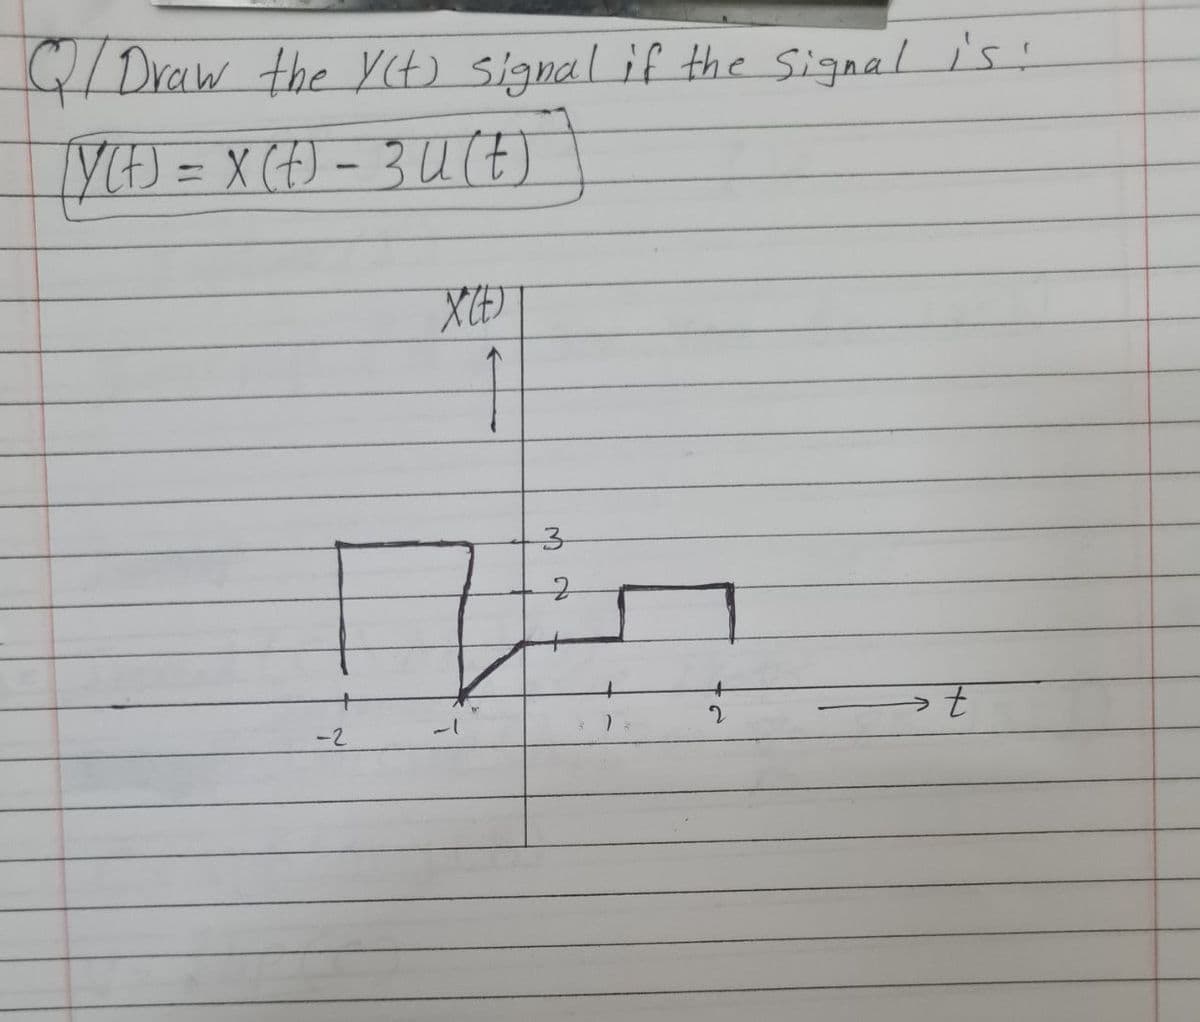 C/ Draw the y(t) signal if the signal is:
[y(t) = x (t) = 3 α (t)
X(E)
32
2